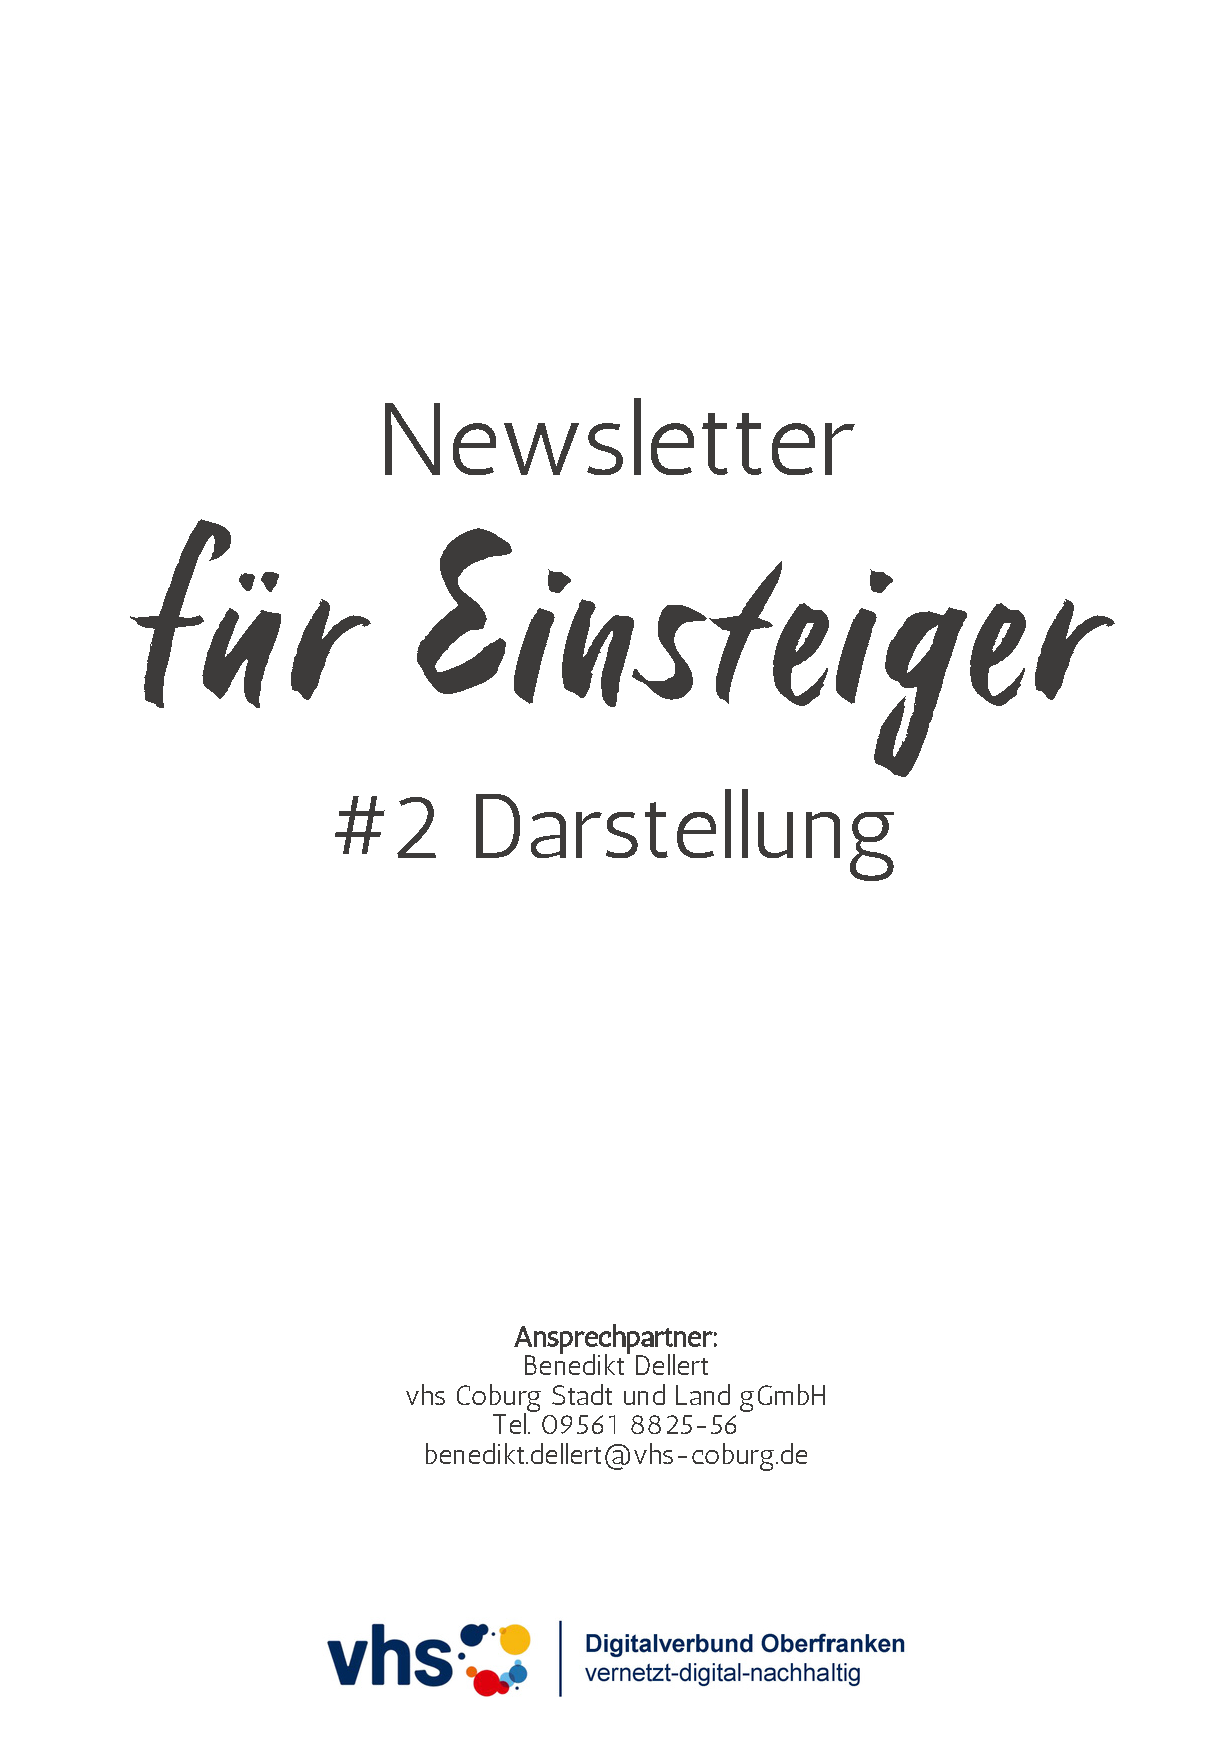 Deckblatt Marketing-Digithek: Darstellung Newsletter